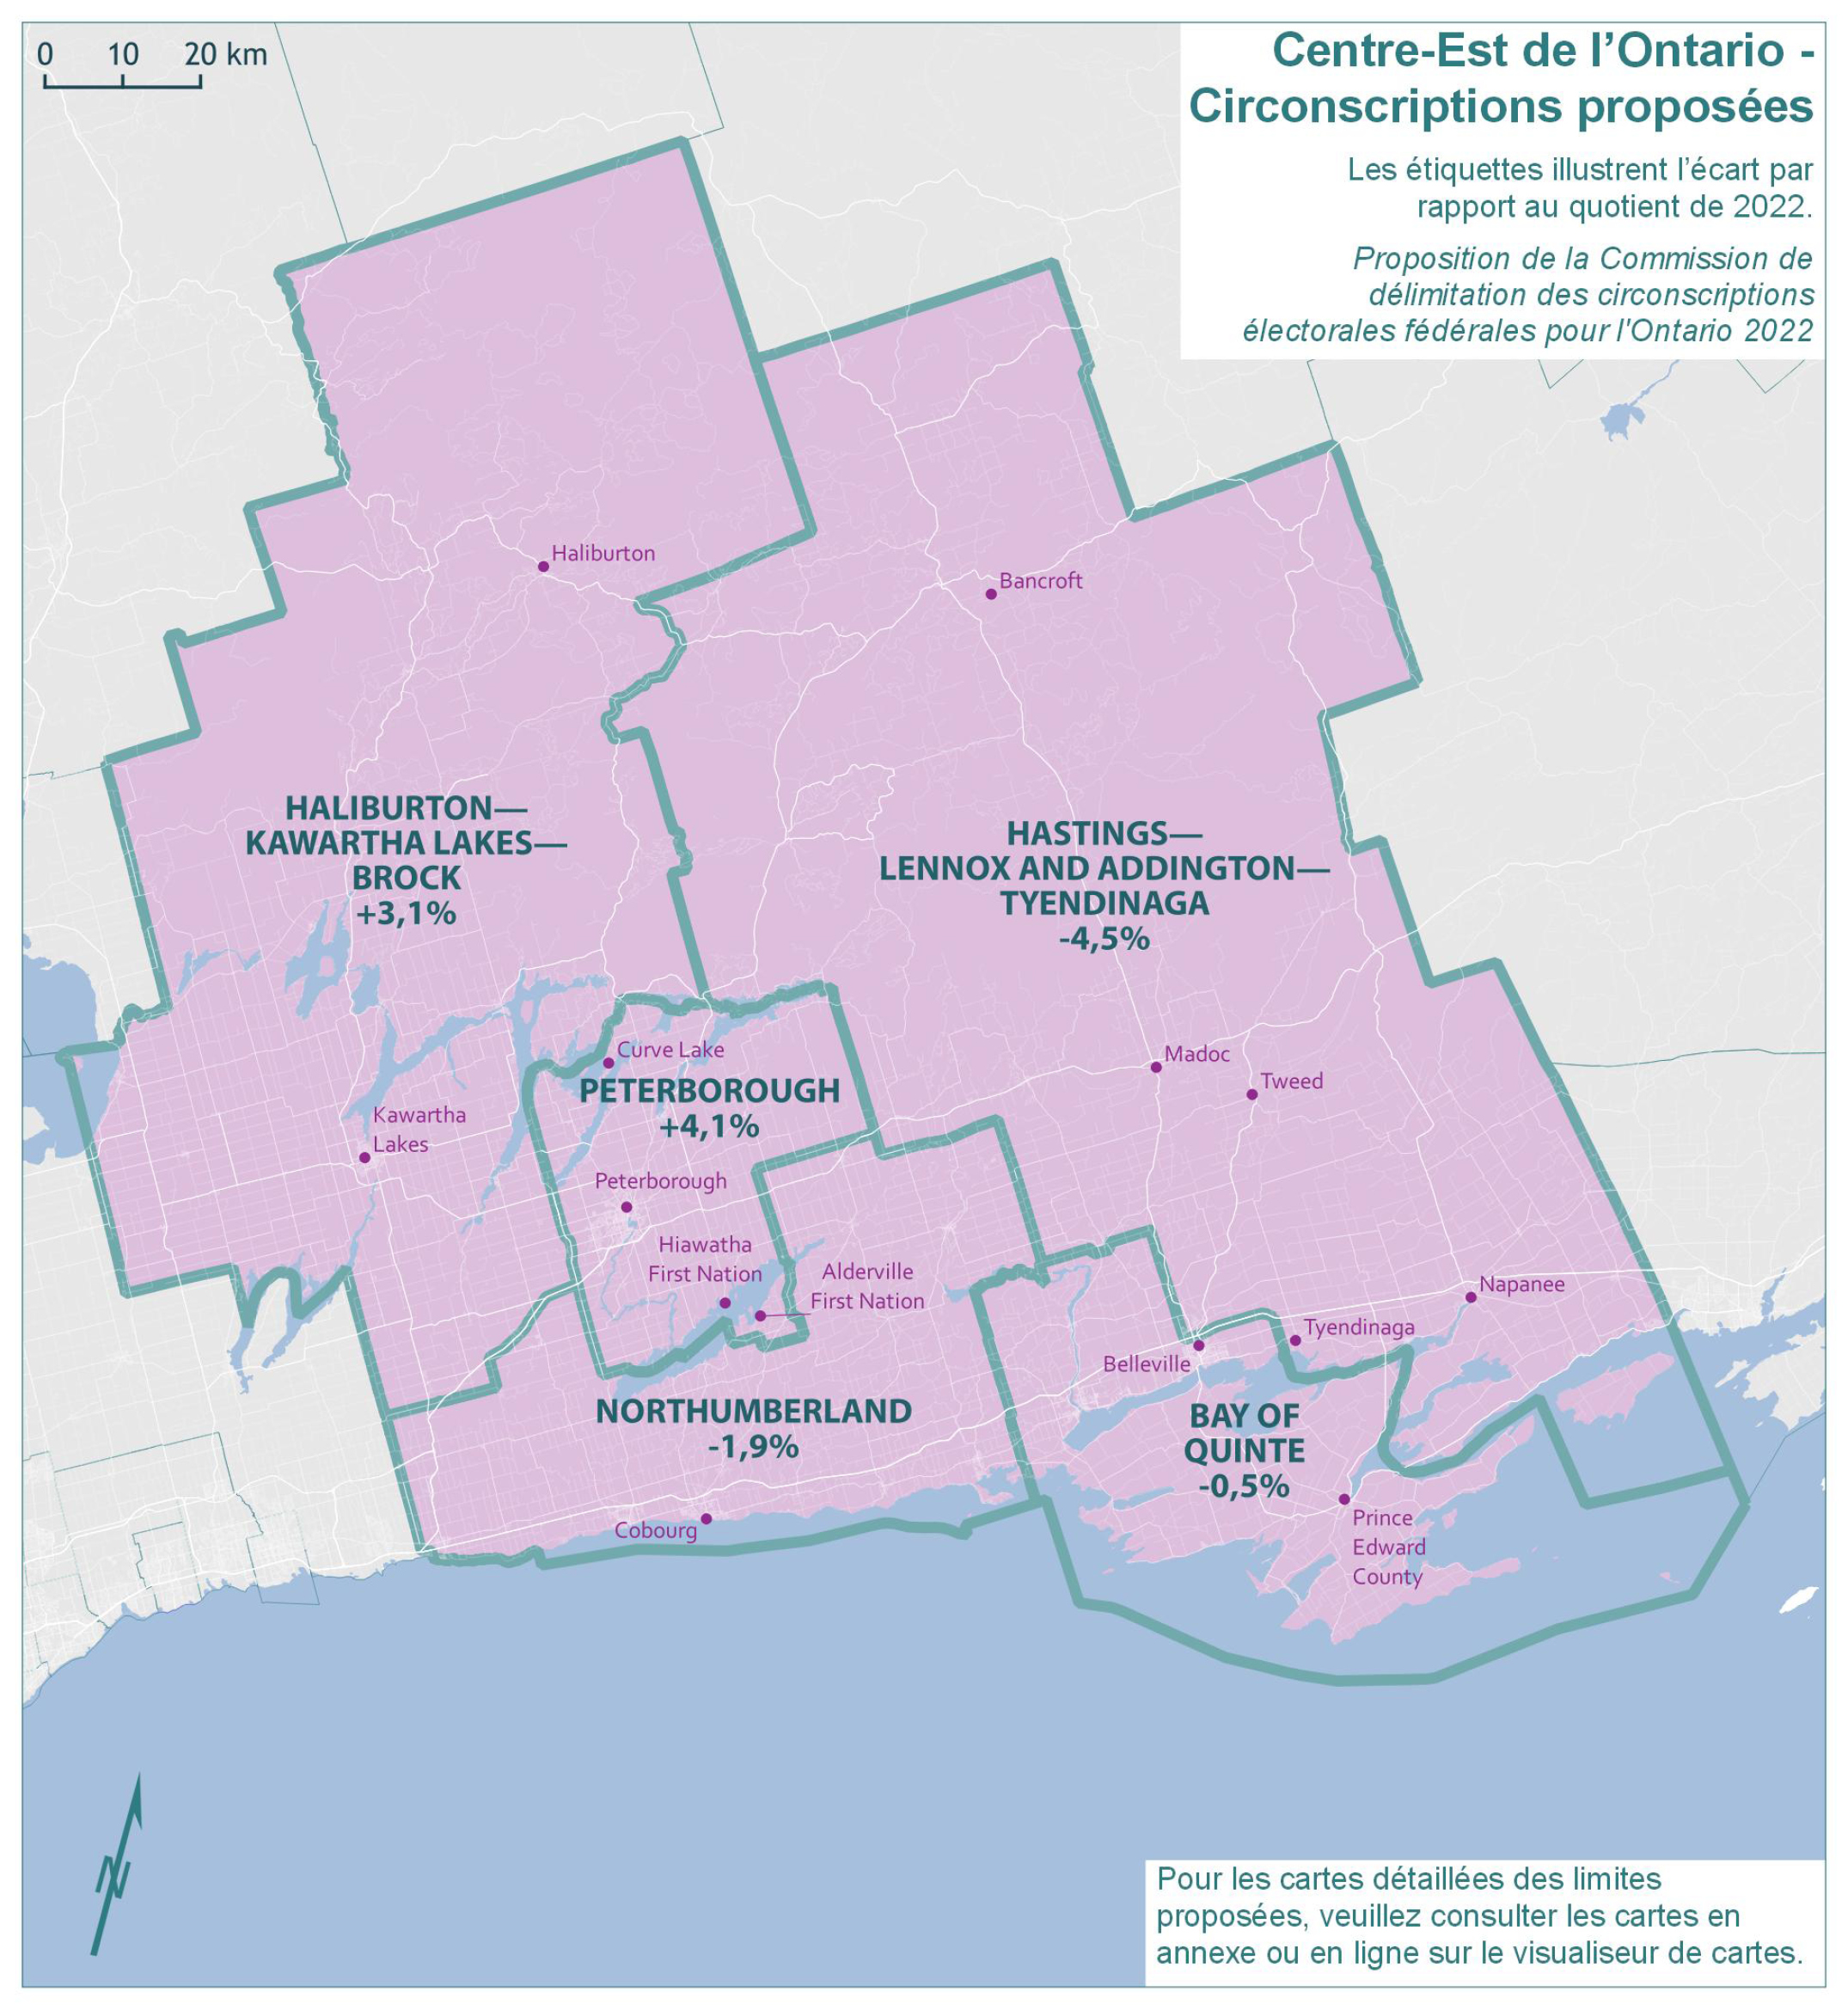 Centre-Est de l’Ontario - Circonscriptions proposées